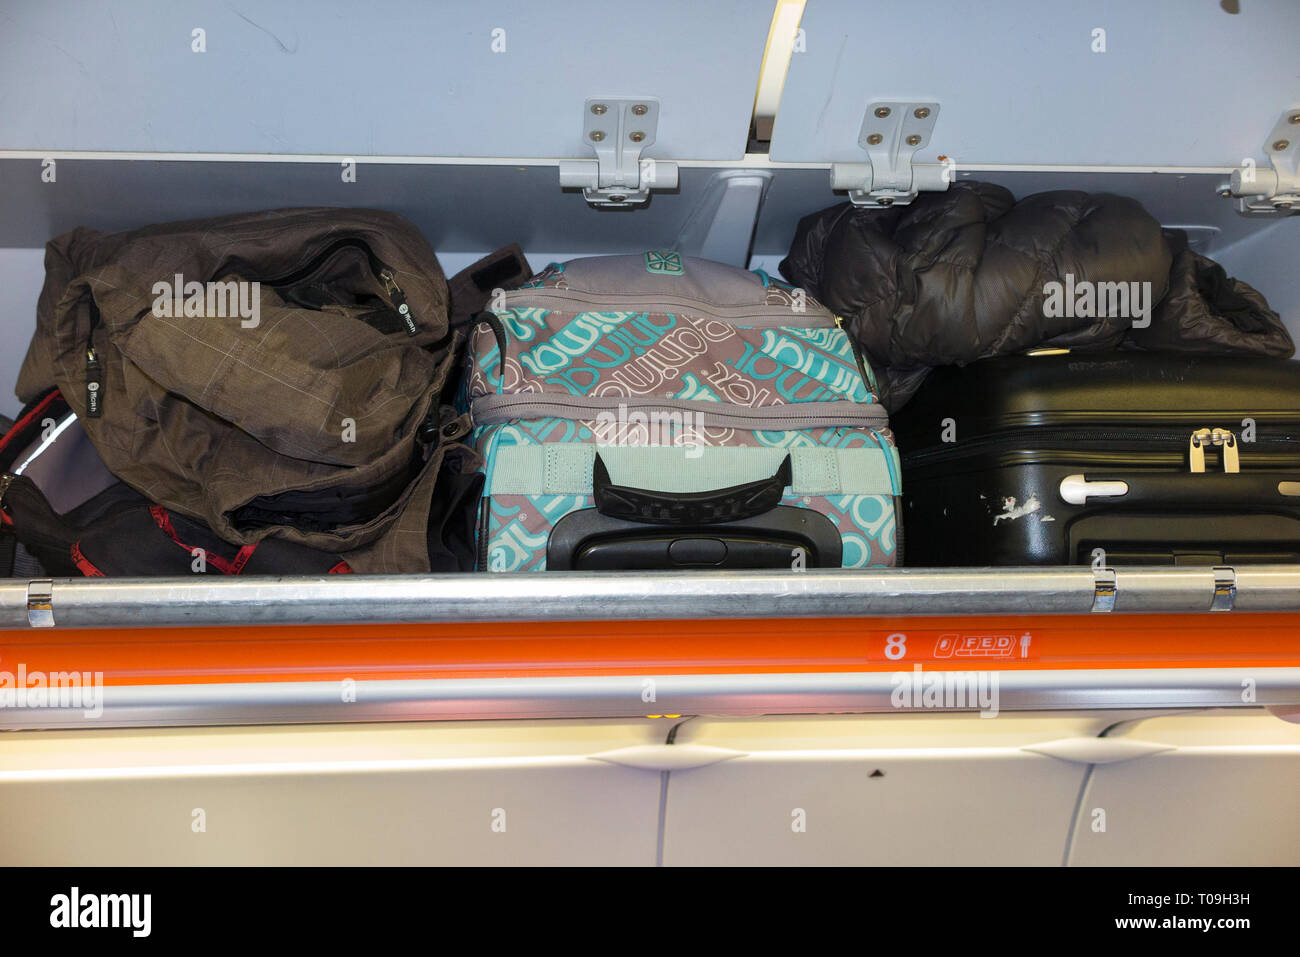 Casier/casiers/compartiments pour passagers aériens pour ranger des bagages  de cabine sur un Airbus A320 ou A319 Easyjet Photo Stock - Alamy